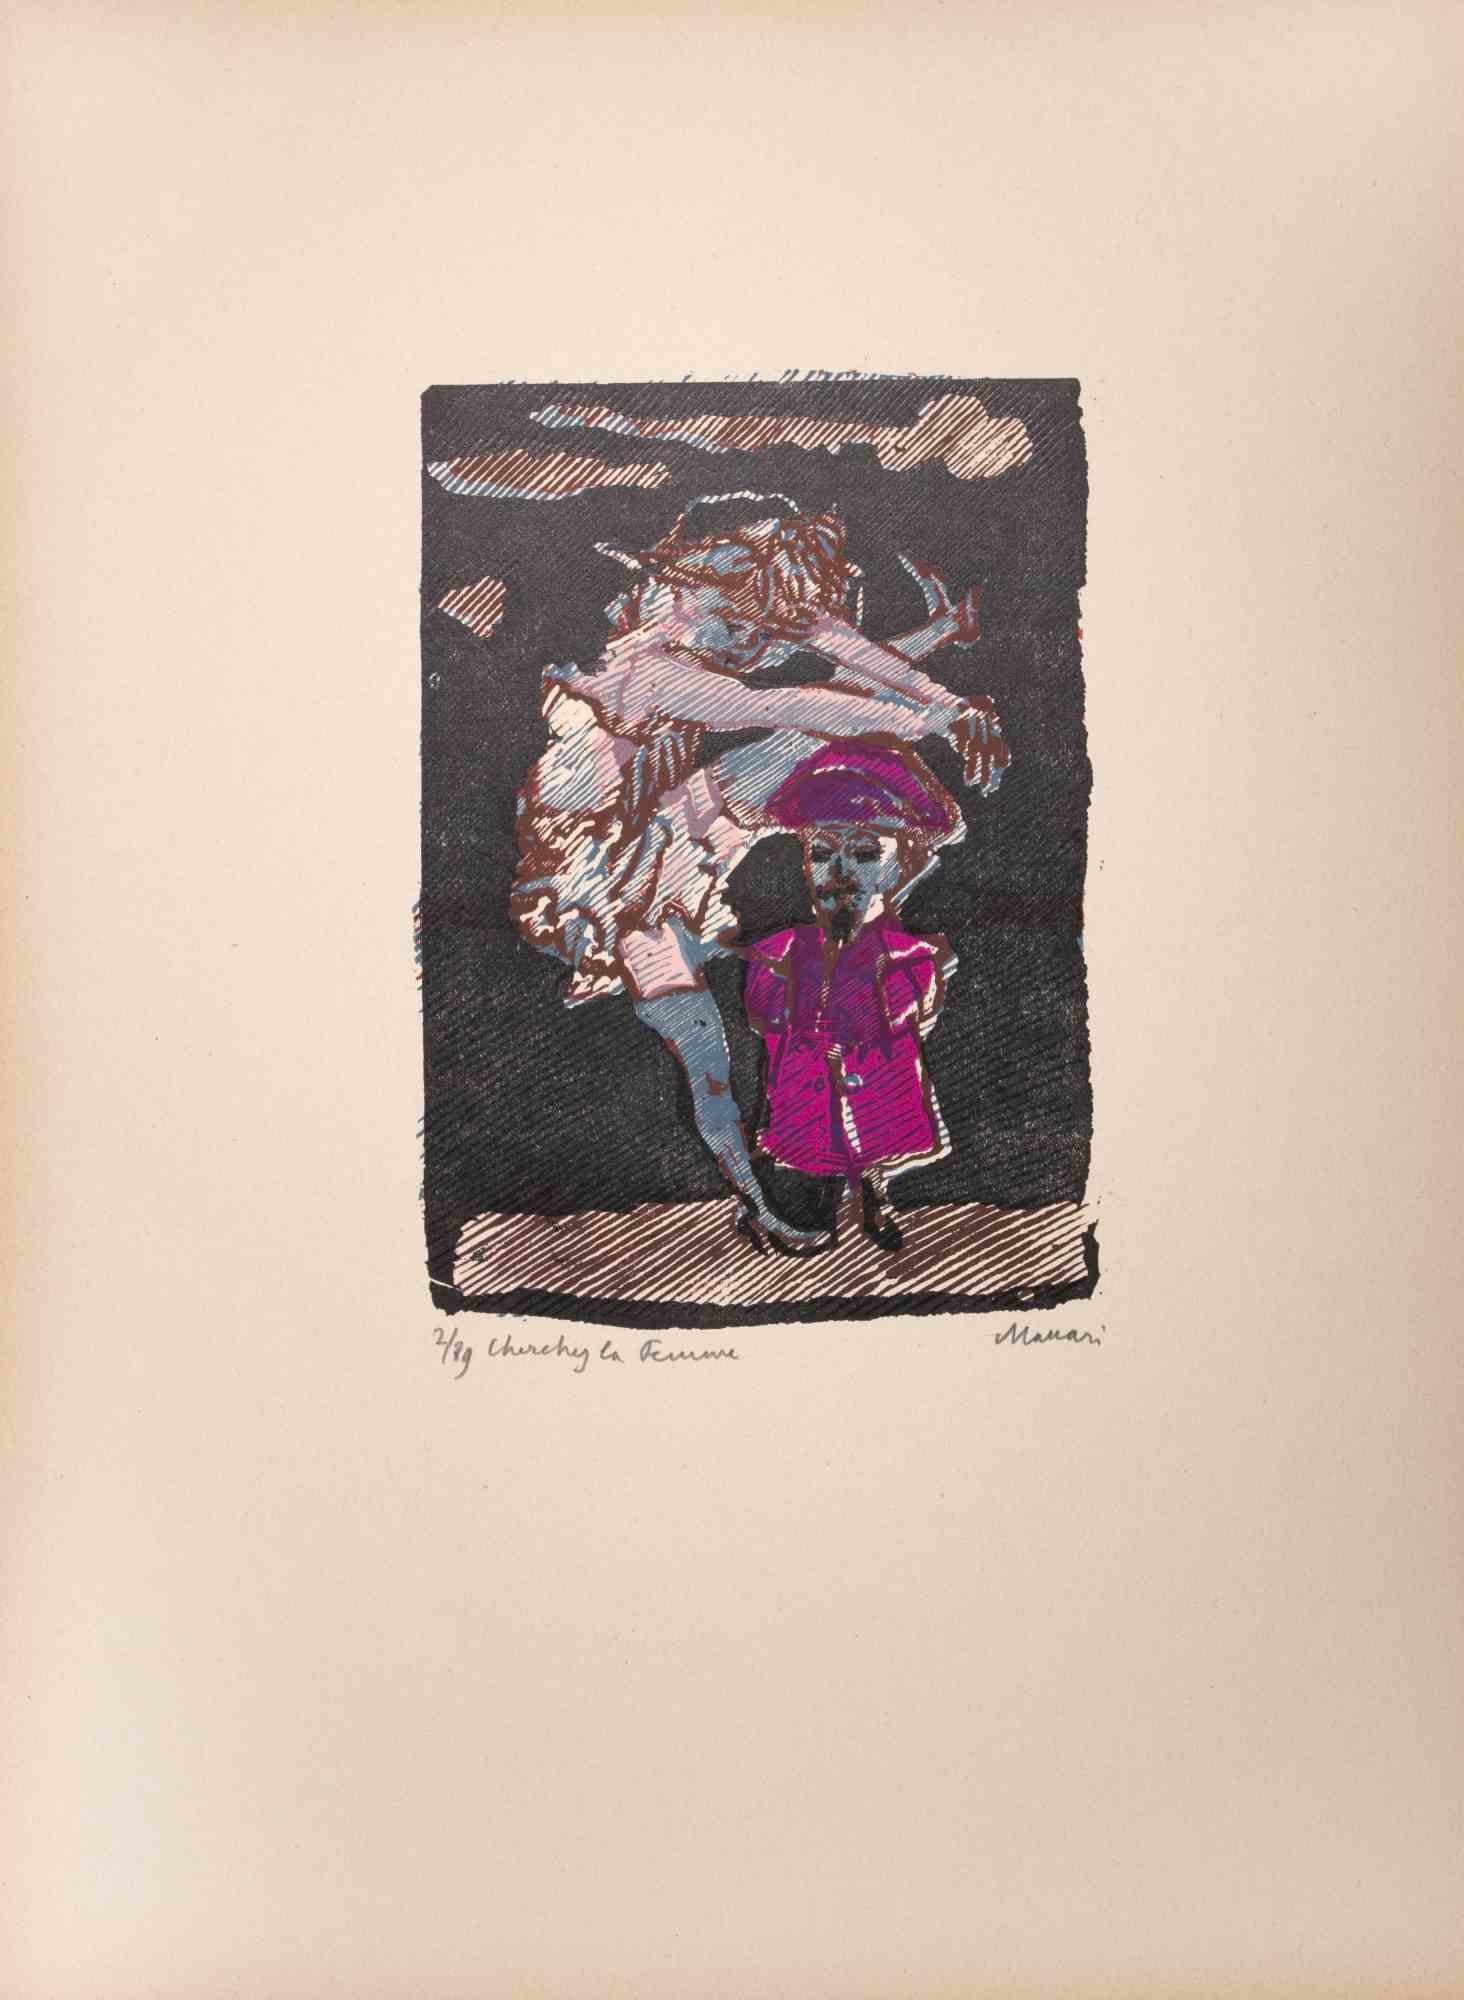  Cherchez la Femme ist ein Kunstwerk von Mino Maccari (1924-1989) aus der Mitte des 20. Jahrhunderts.

Farbiger Holzschnitt auf Papier. Unten handsigniert, nummeriert 2/89 Exemplare und am linken Rand betitelt.

Gute Bedingungen.

Mino Maccari